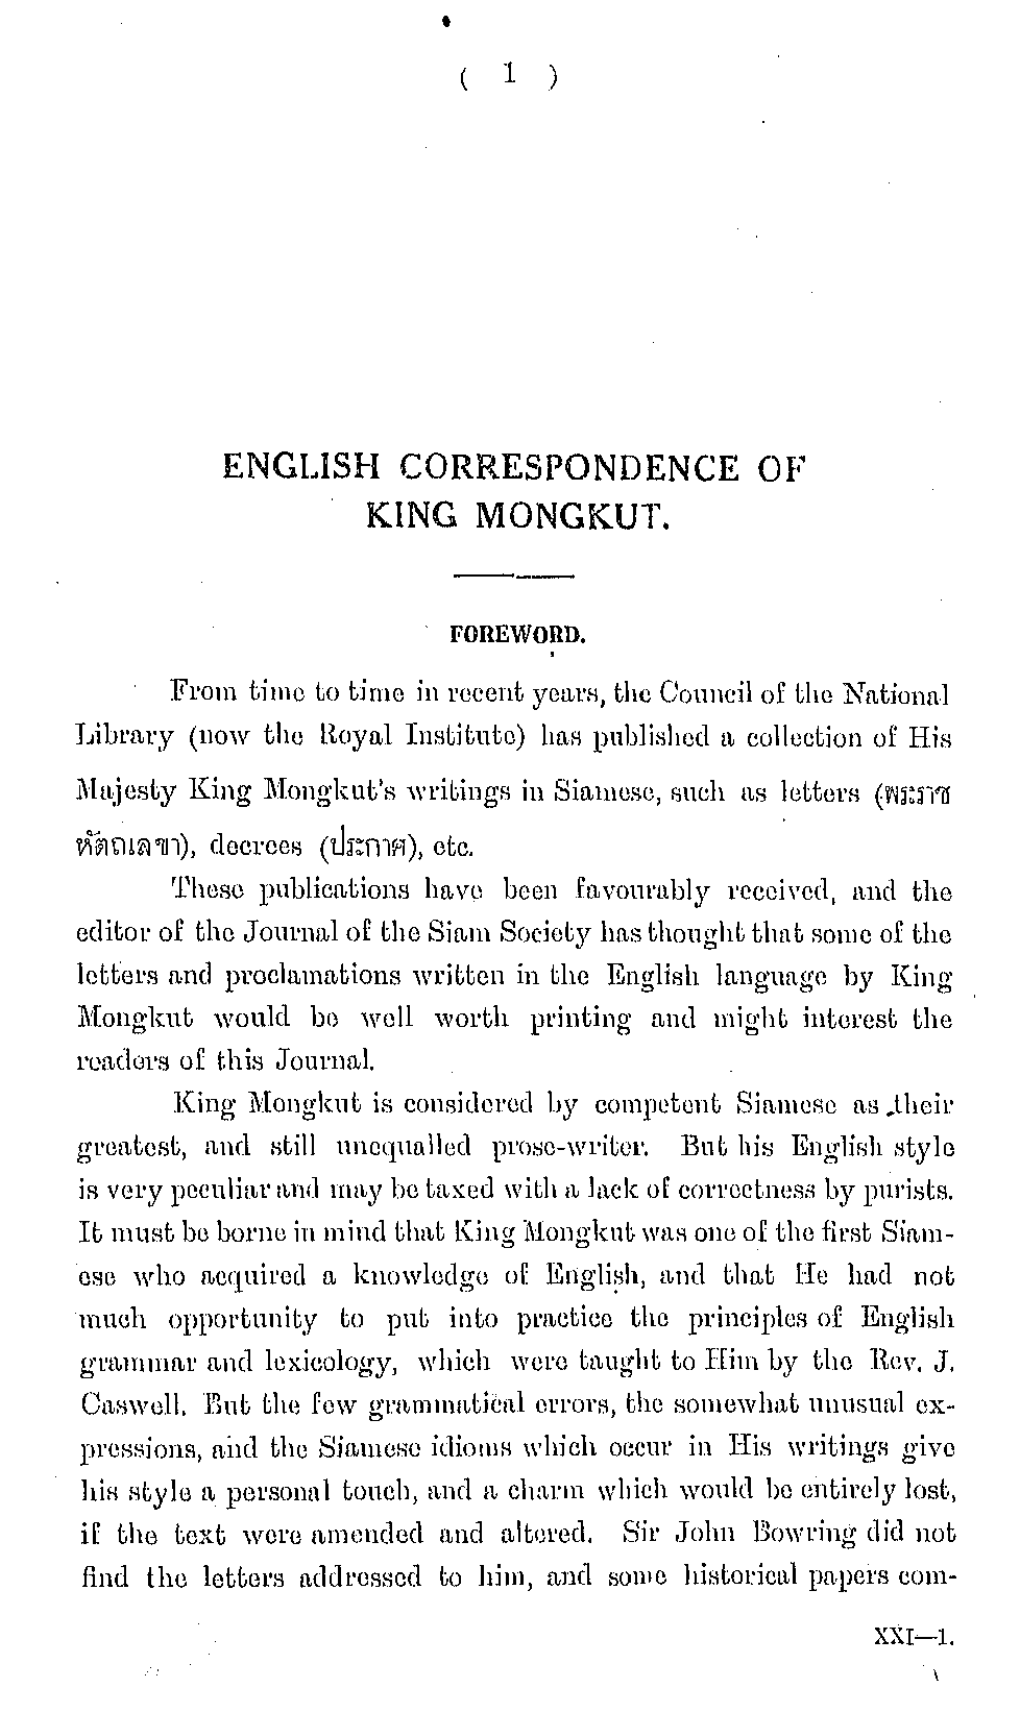 English Correspondence of King Mongkut